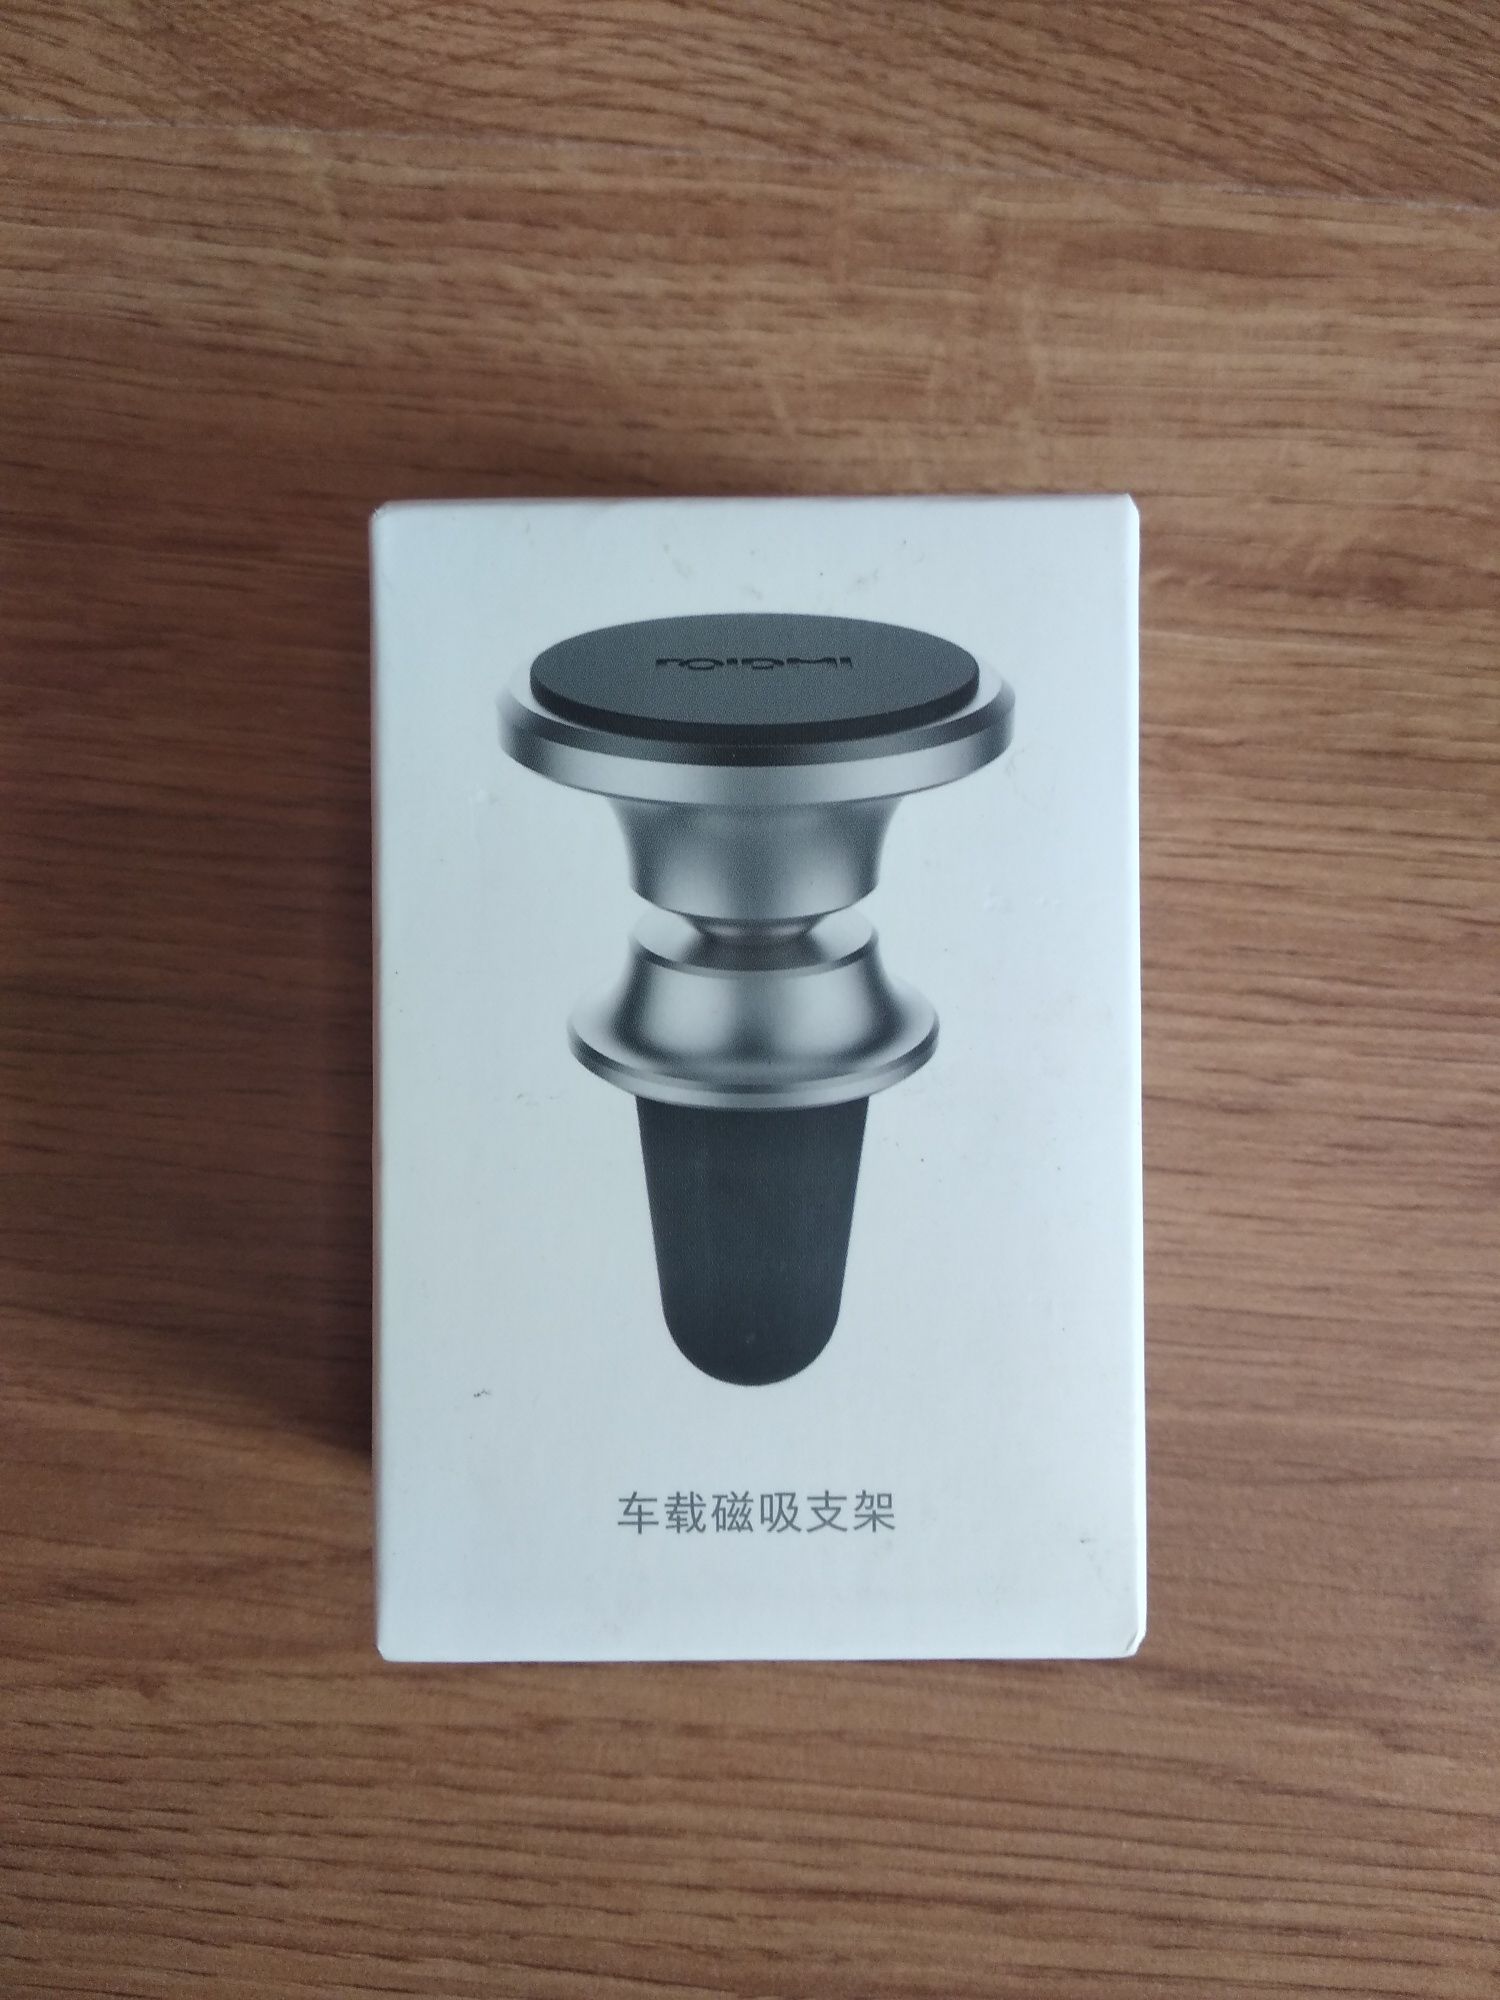 Автомобильный магнитный держатель Xiaomi Roidmi Z1 чёрный цвет